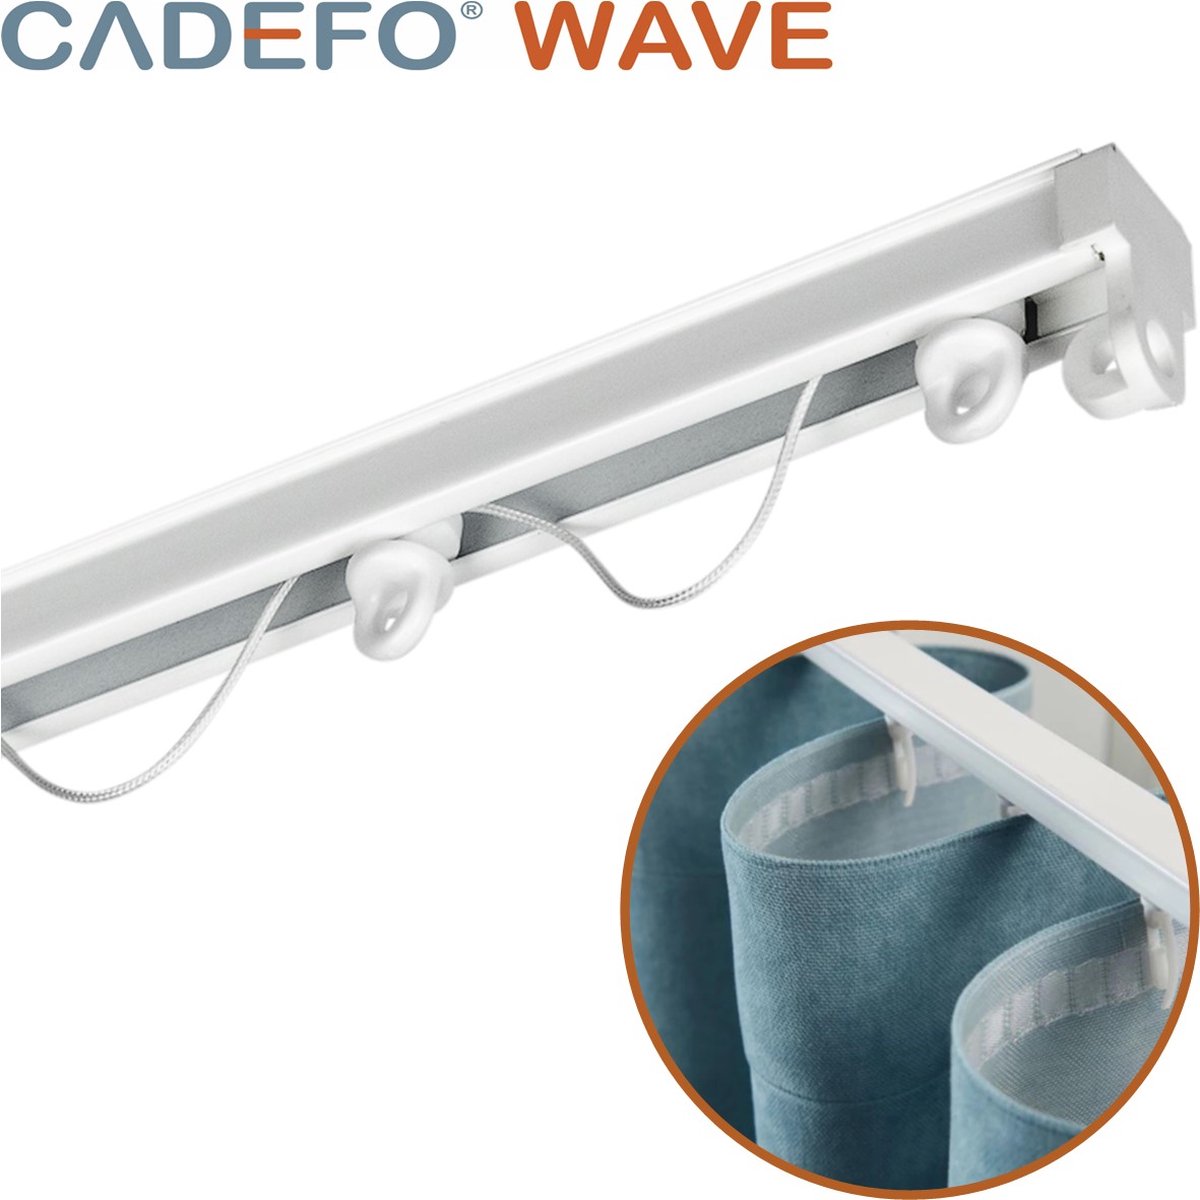 CADEFO WAVE (301 - 350 cm) Gordijnrails - Compleet op maat! - UIT 1 STUK - Leverbaar tot 6 meter - Plafondbevestiging - Lengte 304 cm